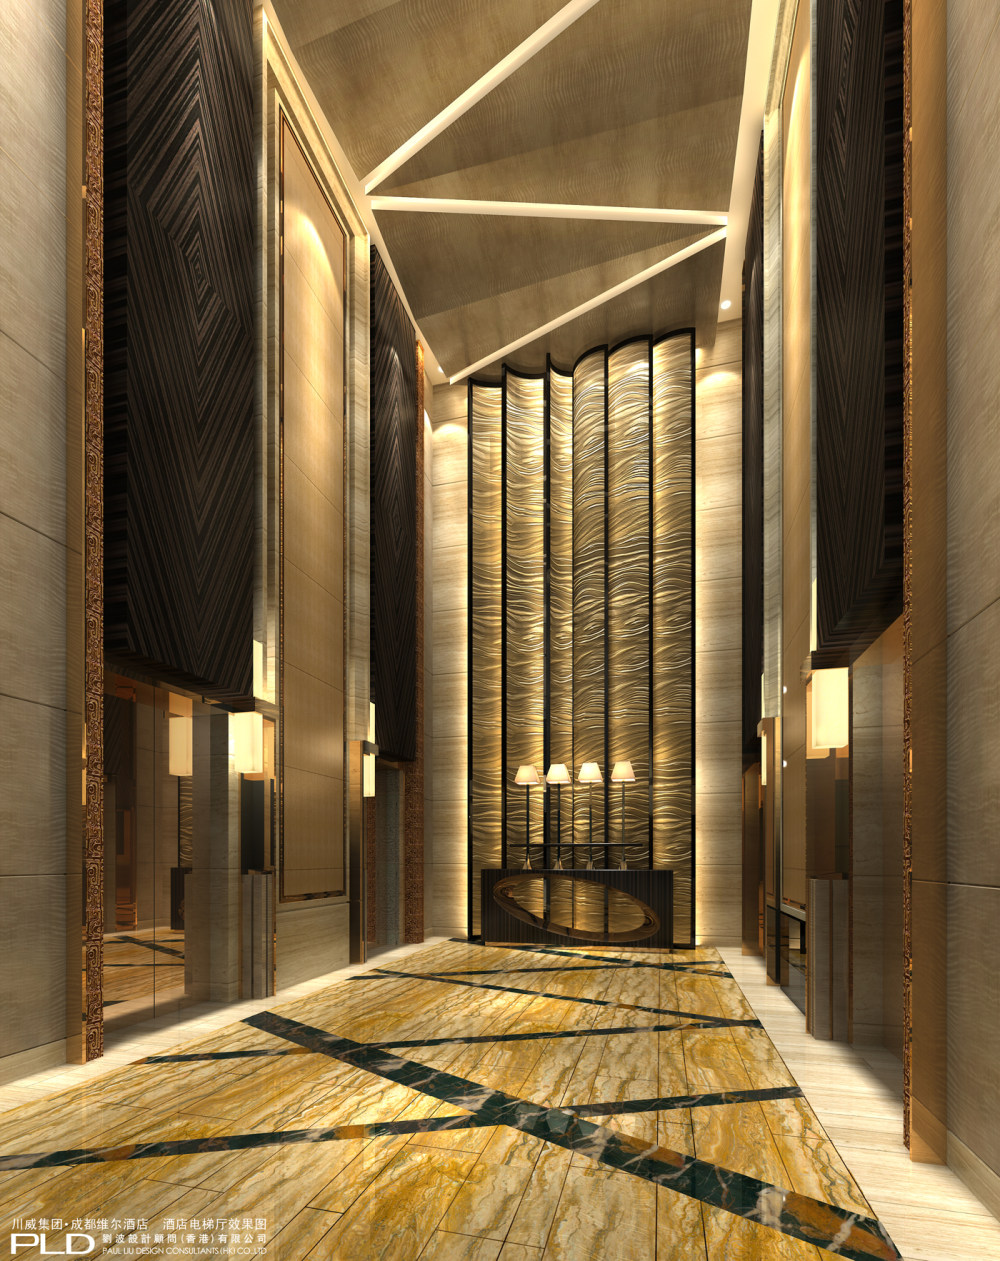 刘波PLD--成都維爾酒店室內設計深化方案20120813_10.酒店电梯厅.jpg